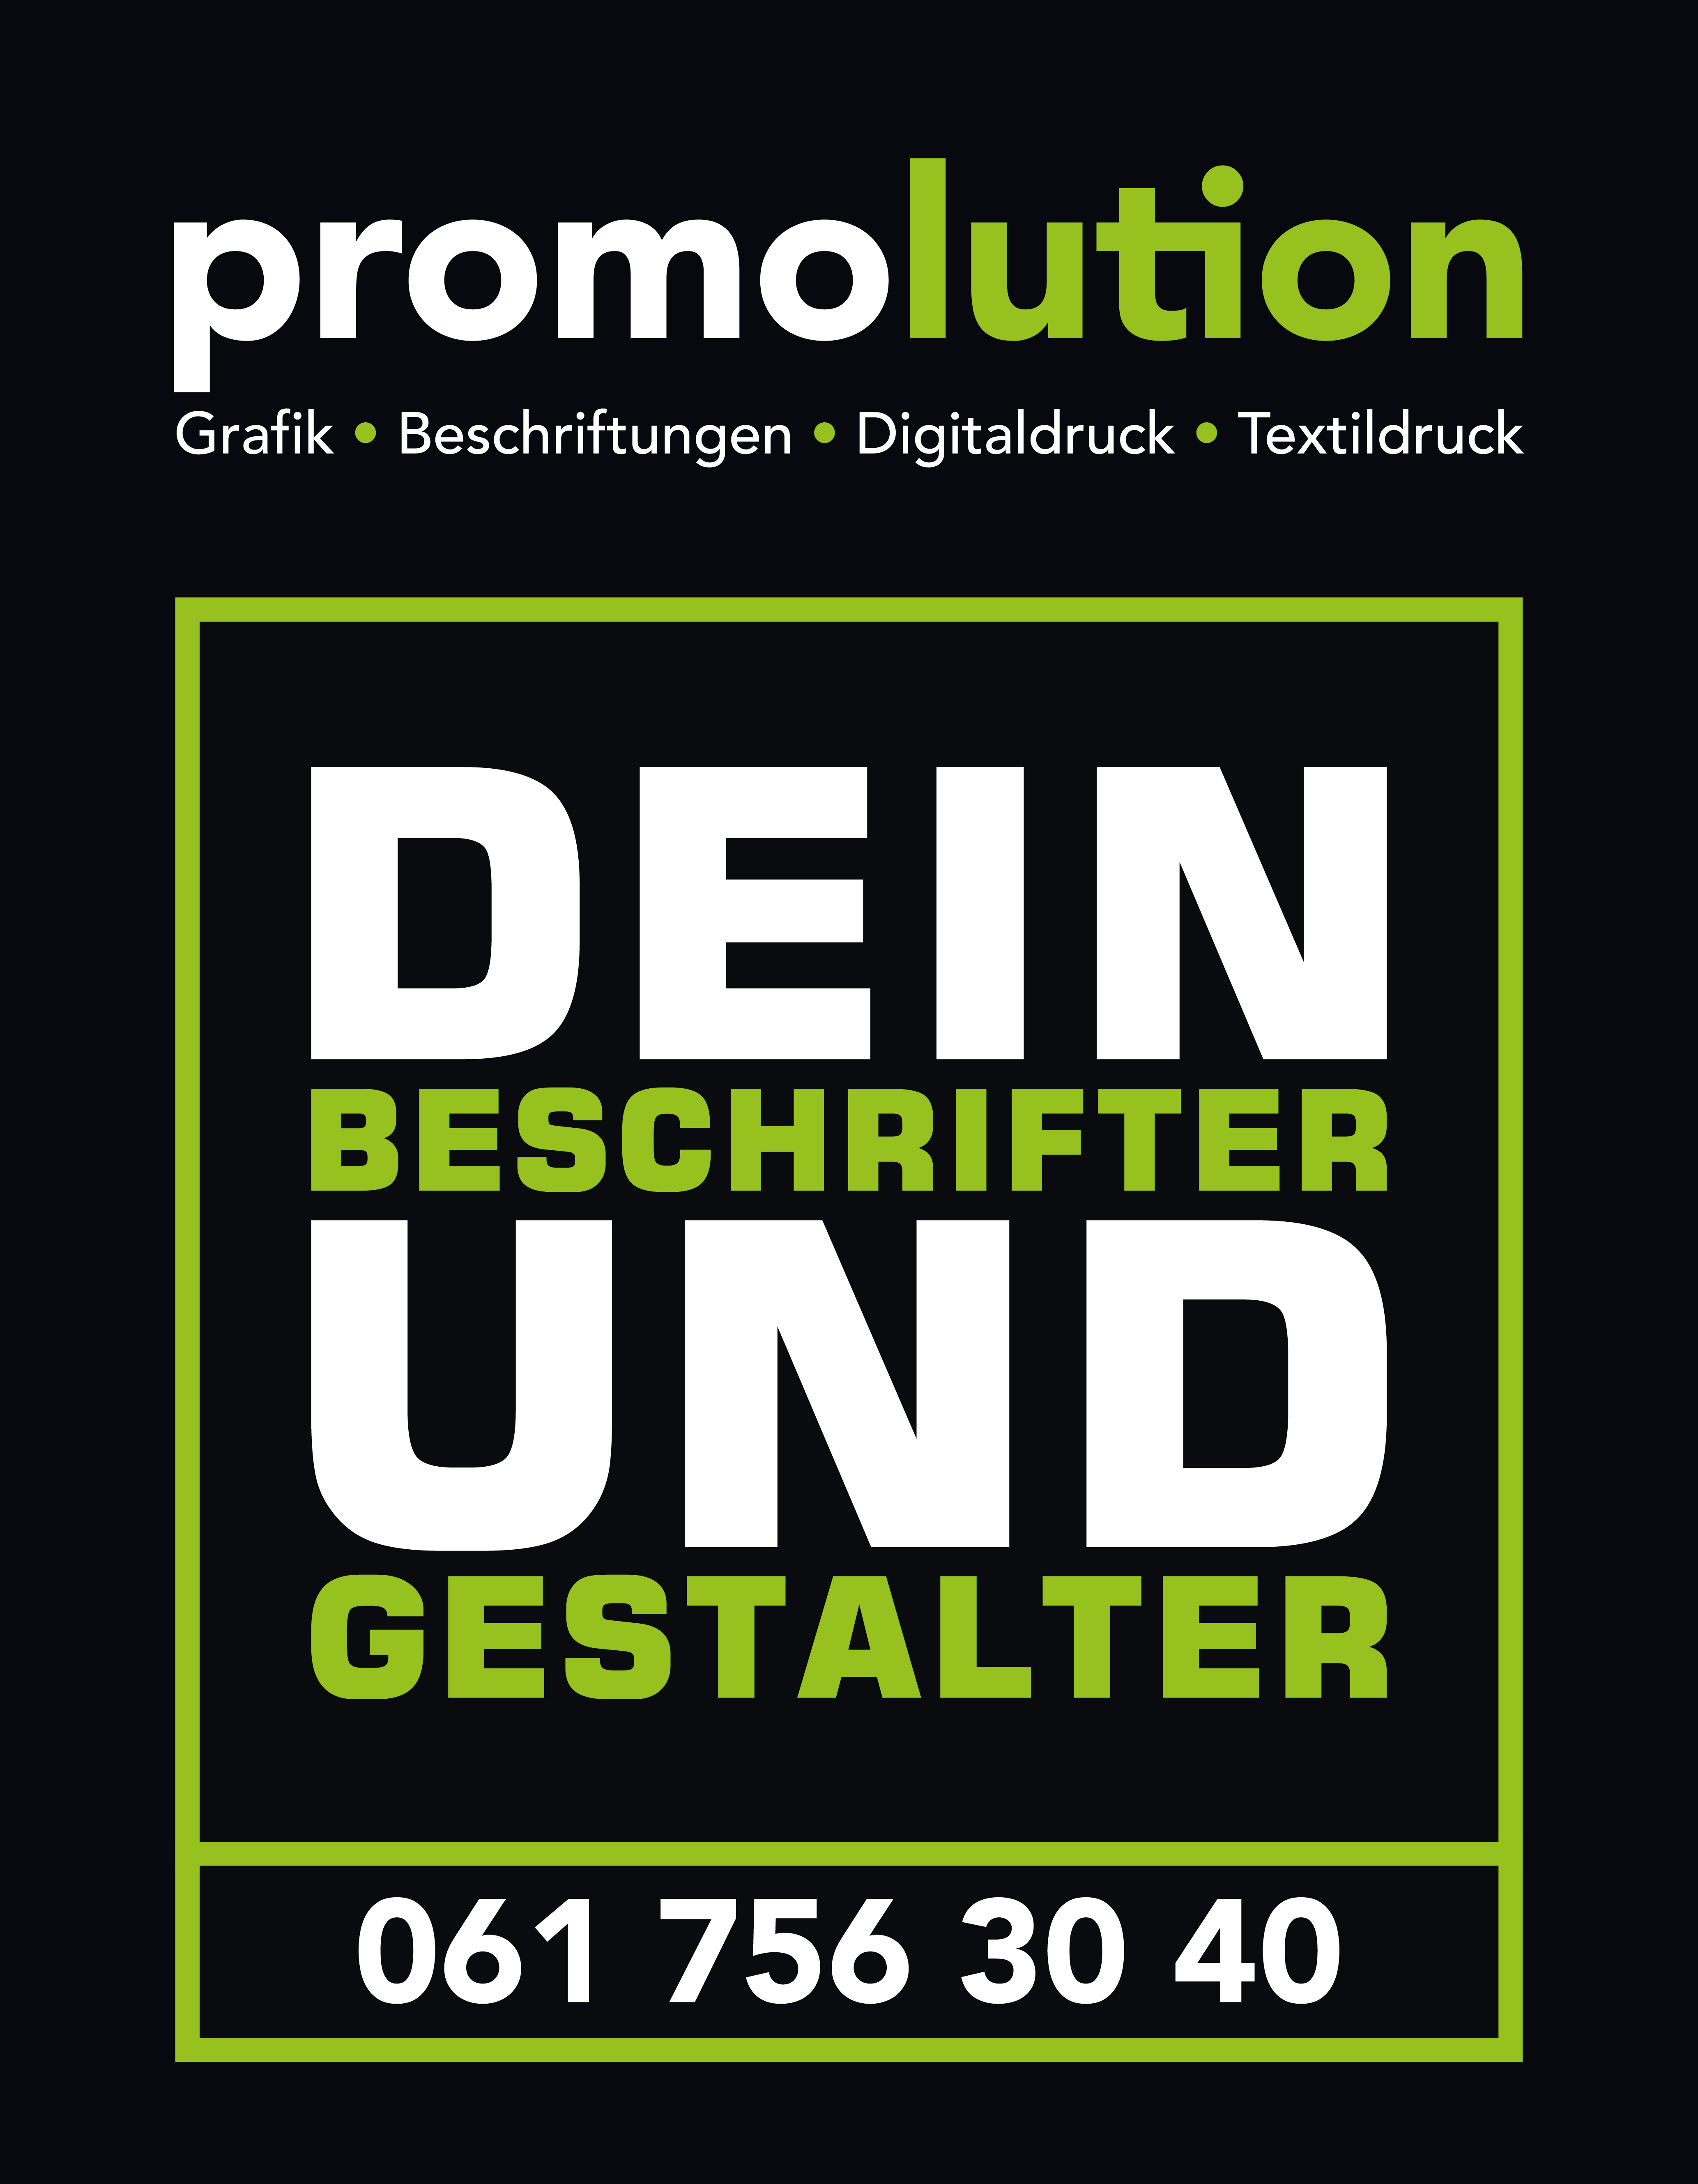 Bilder promolution GmbH